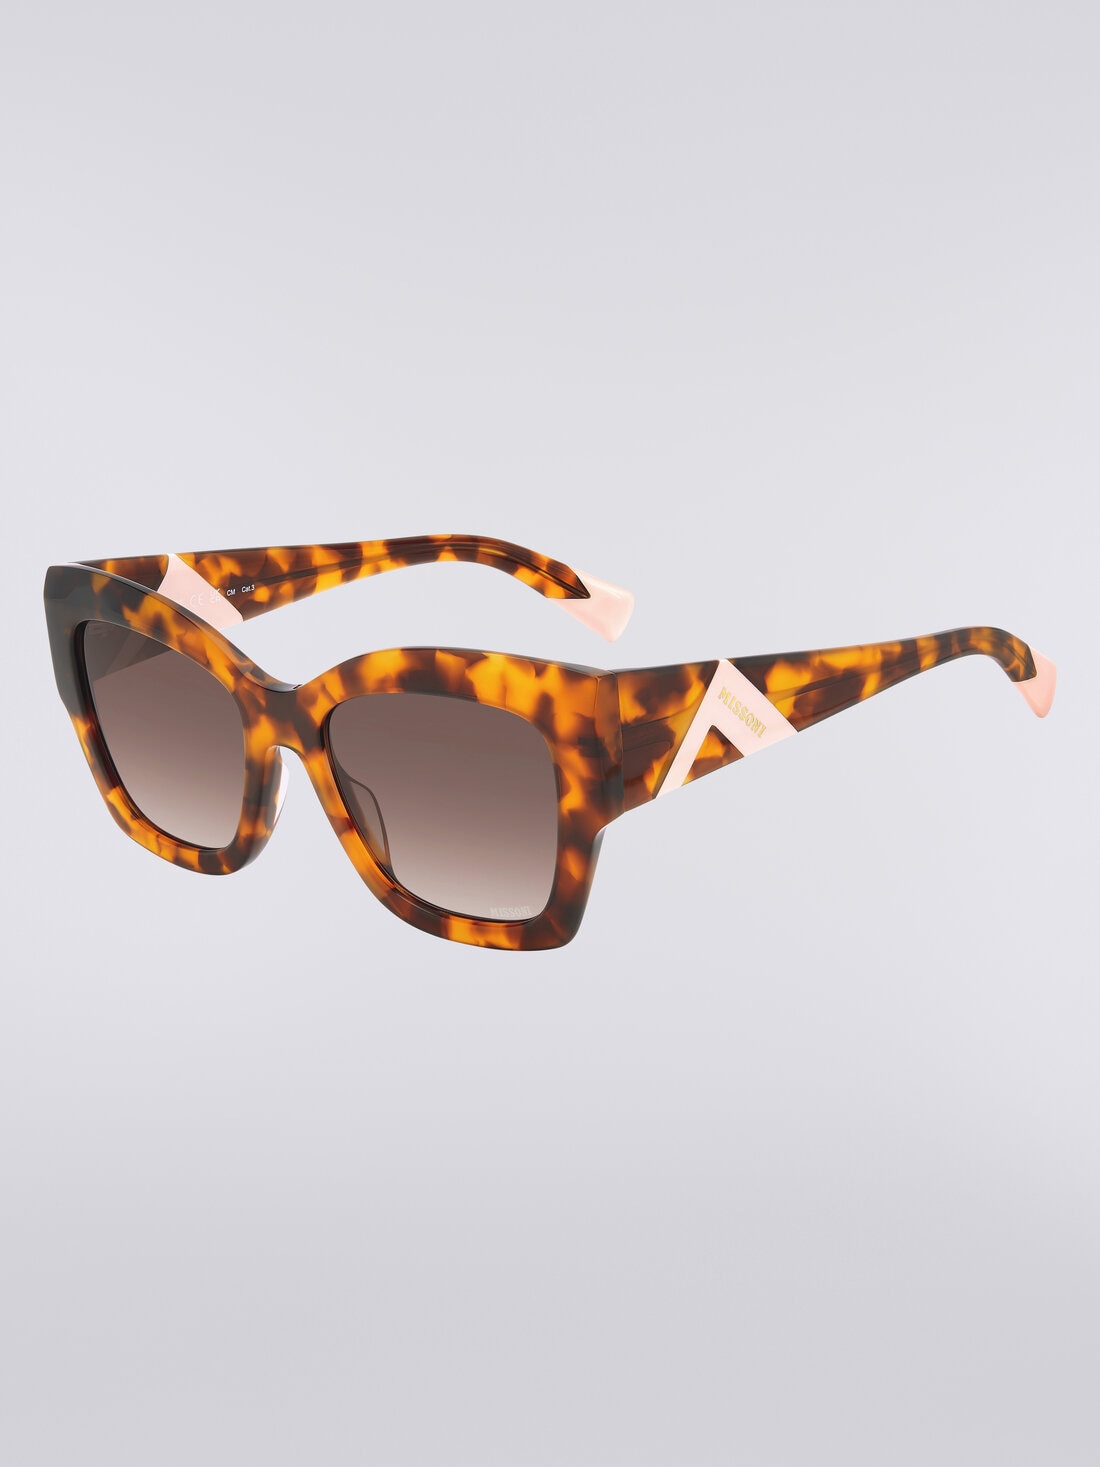 Übergroße Sonnenbrille in Schmetterlingsform, Mehrfarbig  - 8053147115443 - 1